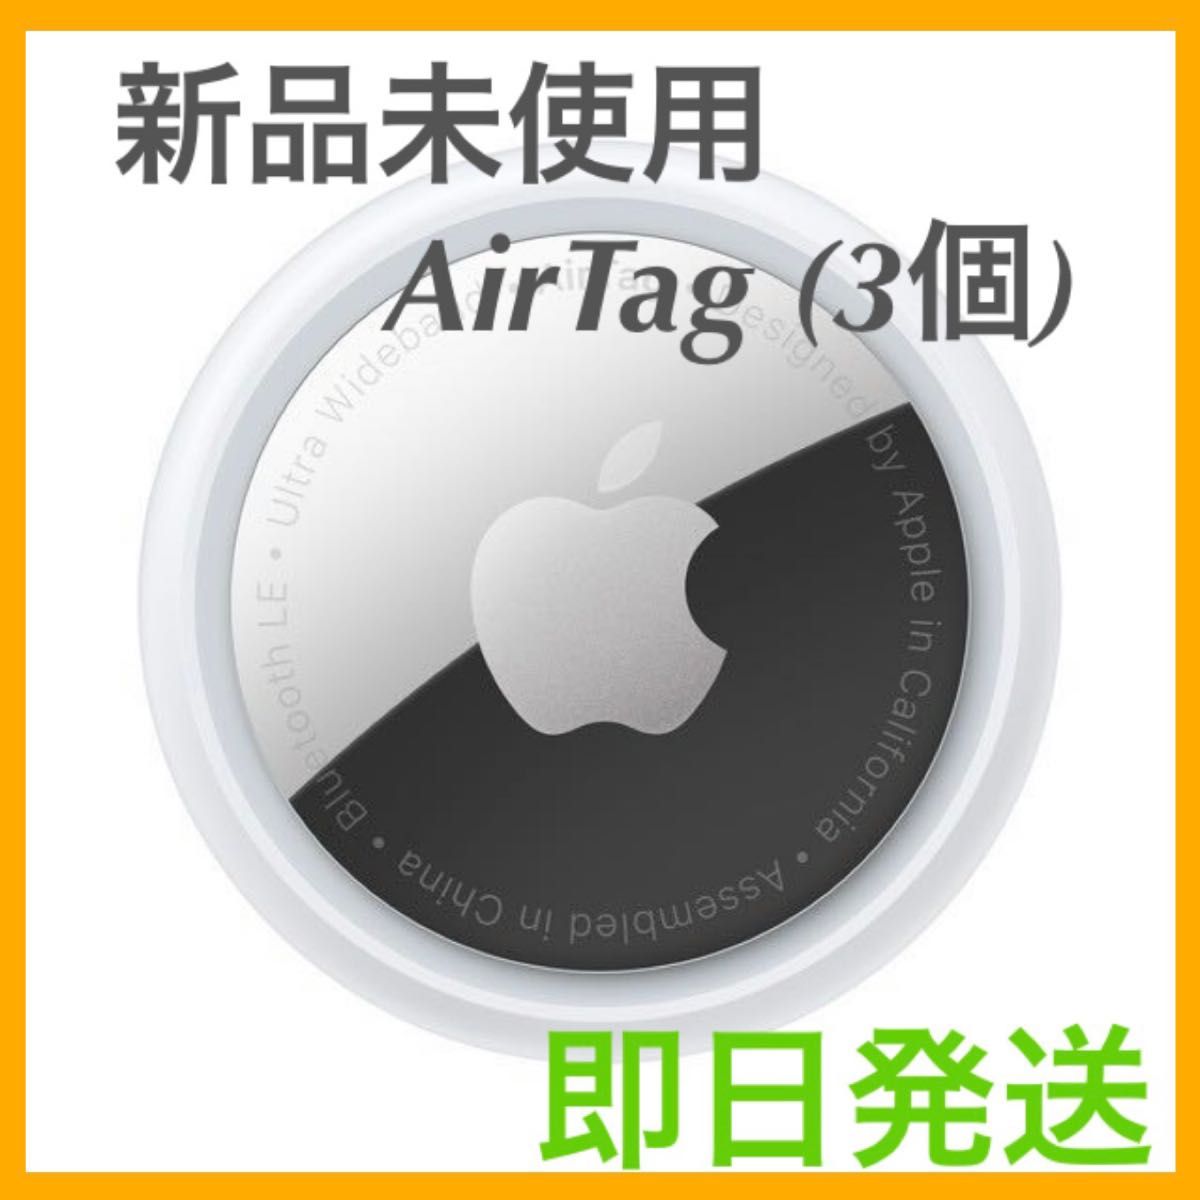 その他 その他 新品本体1個 Apple AirTag 日本語説明書付 アップルエアタグ